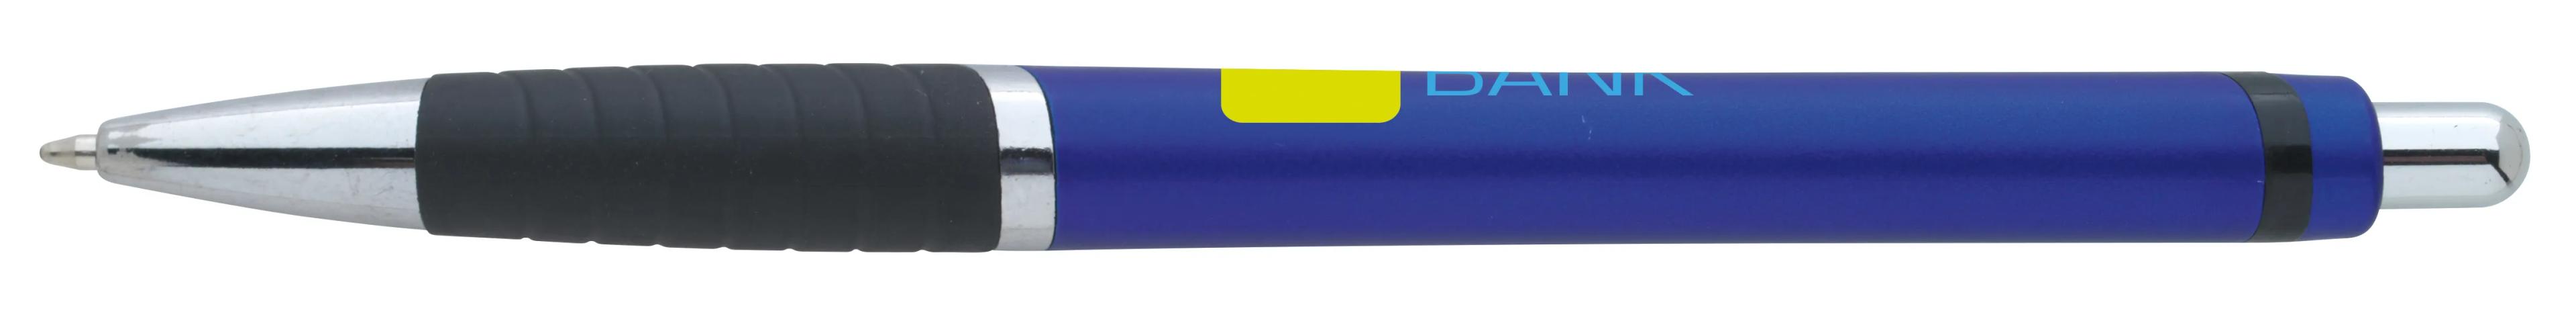 Arrow Metallic Pen 32 of 43